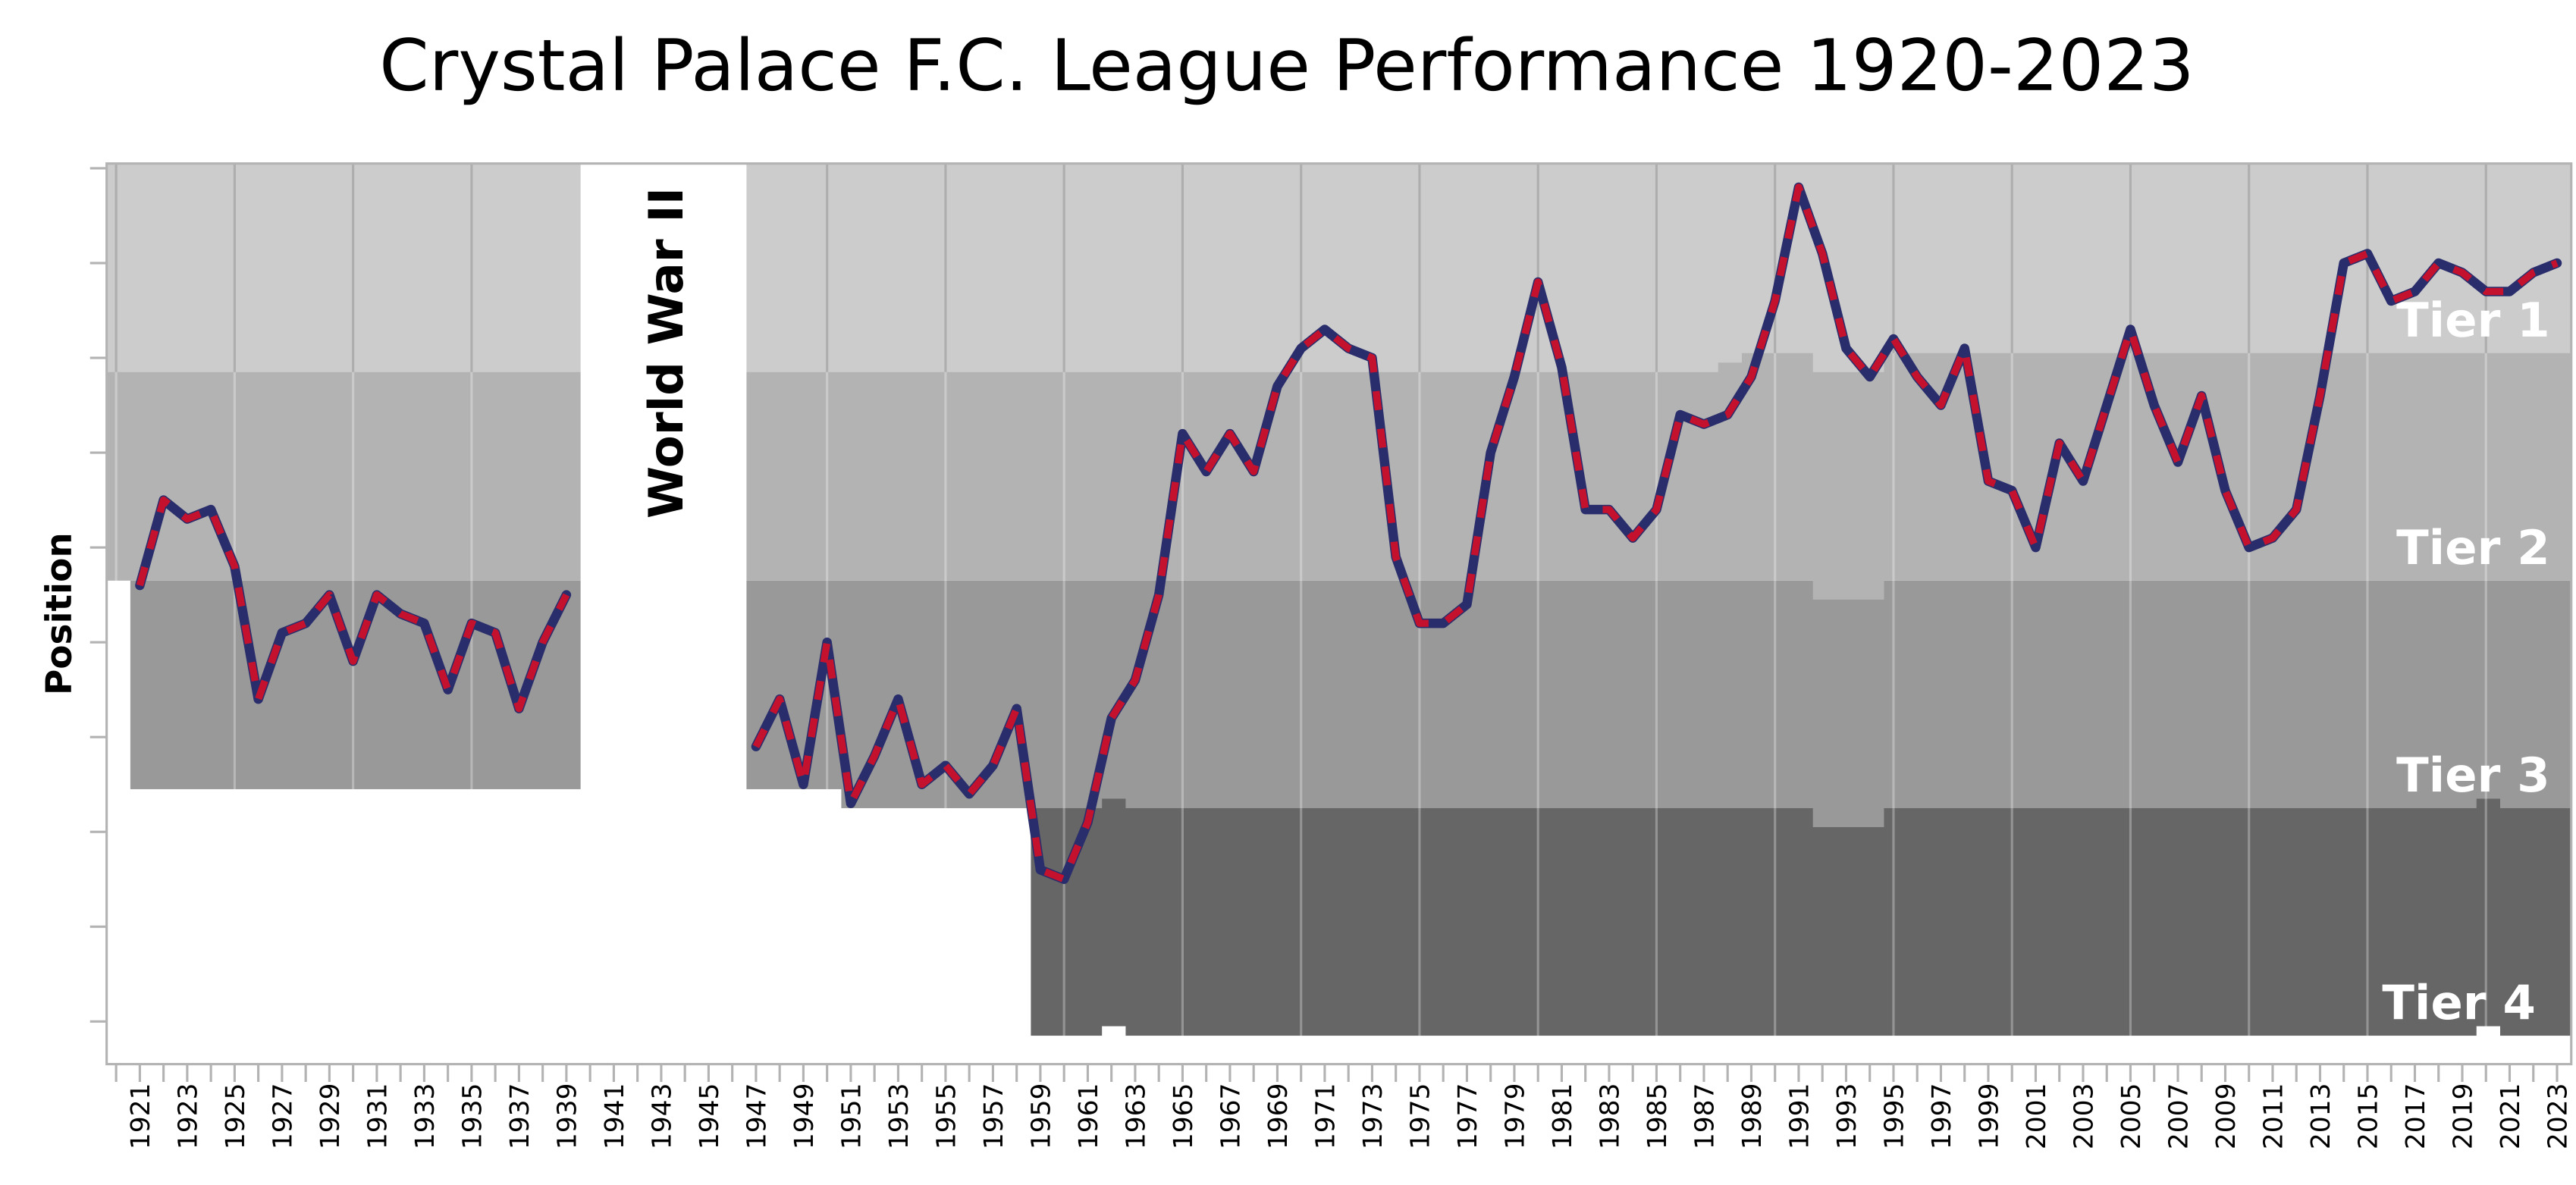 CrystalPalaceFC_League_Performance.jpg